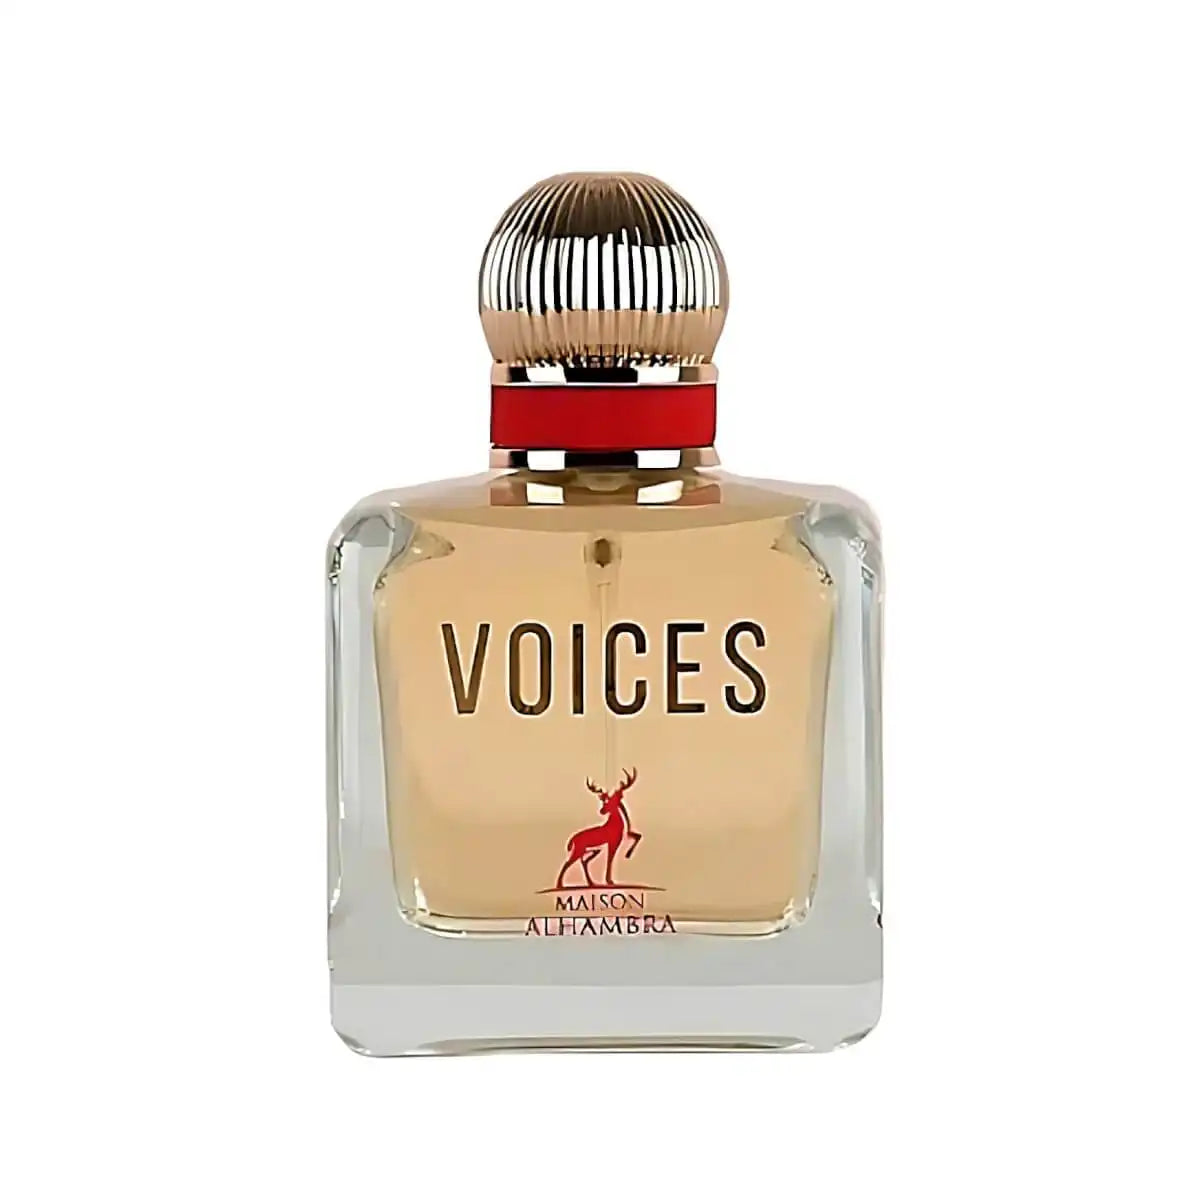 Voices Unisex 100ml Eau De Perfume by Maison Alhambra